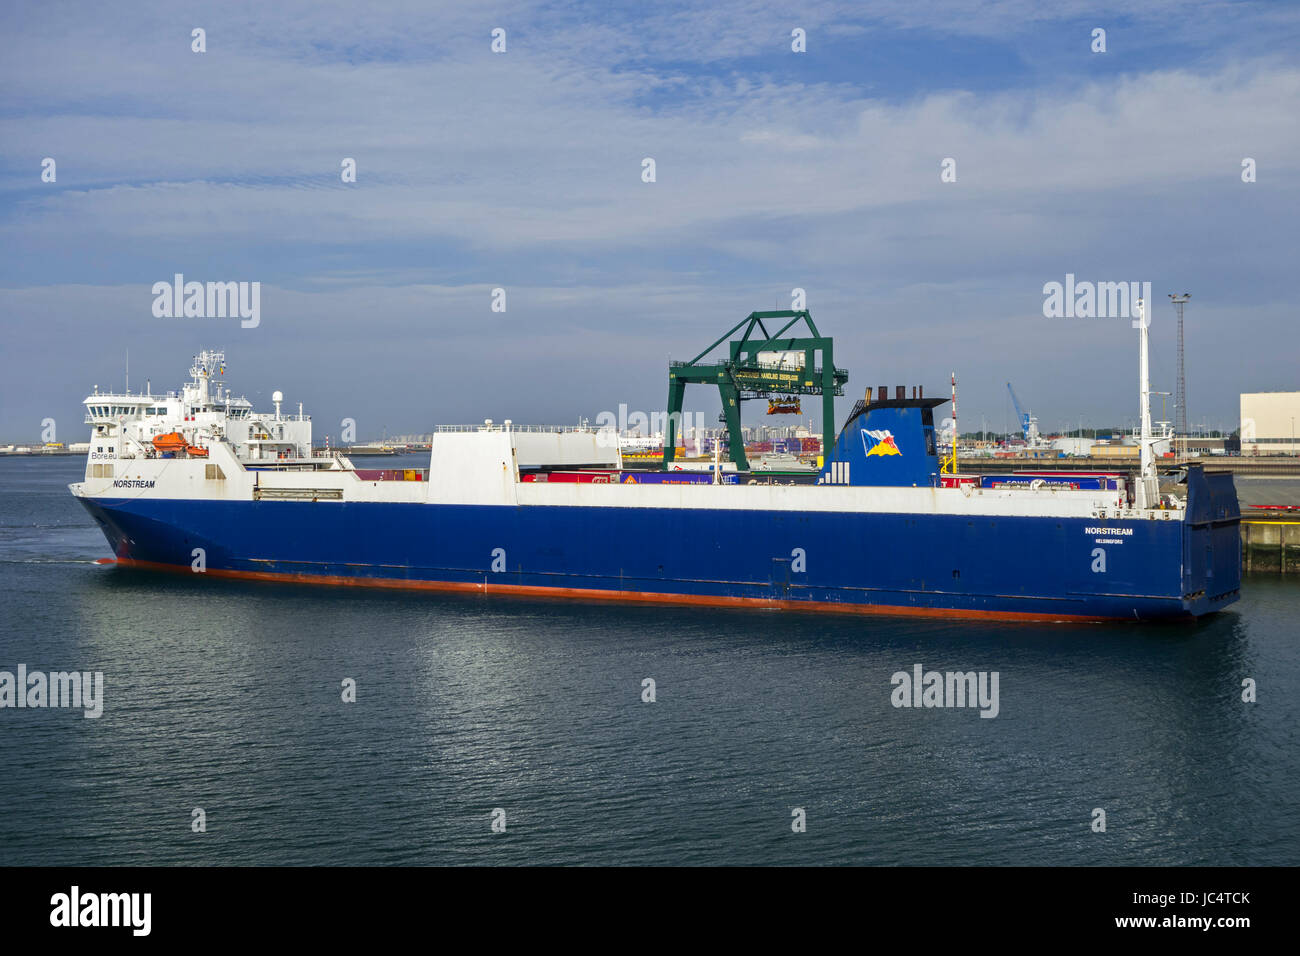 MS Norstream, fletes ferry / buque ro-ro en el puerto de Zeebrugge, Bélgica Foto de stock